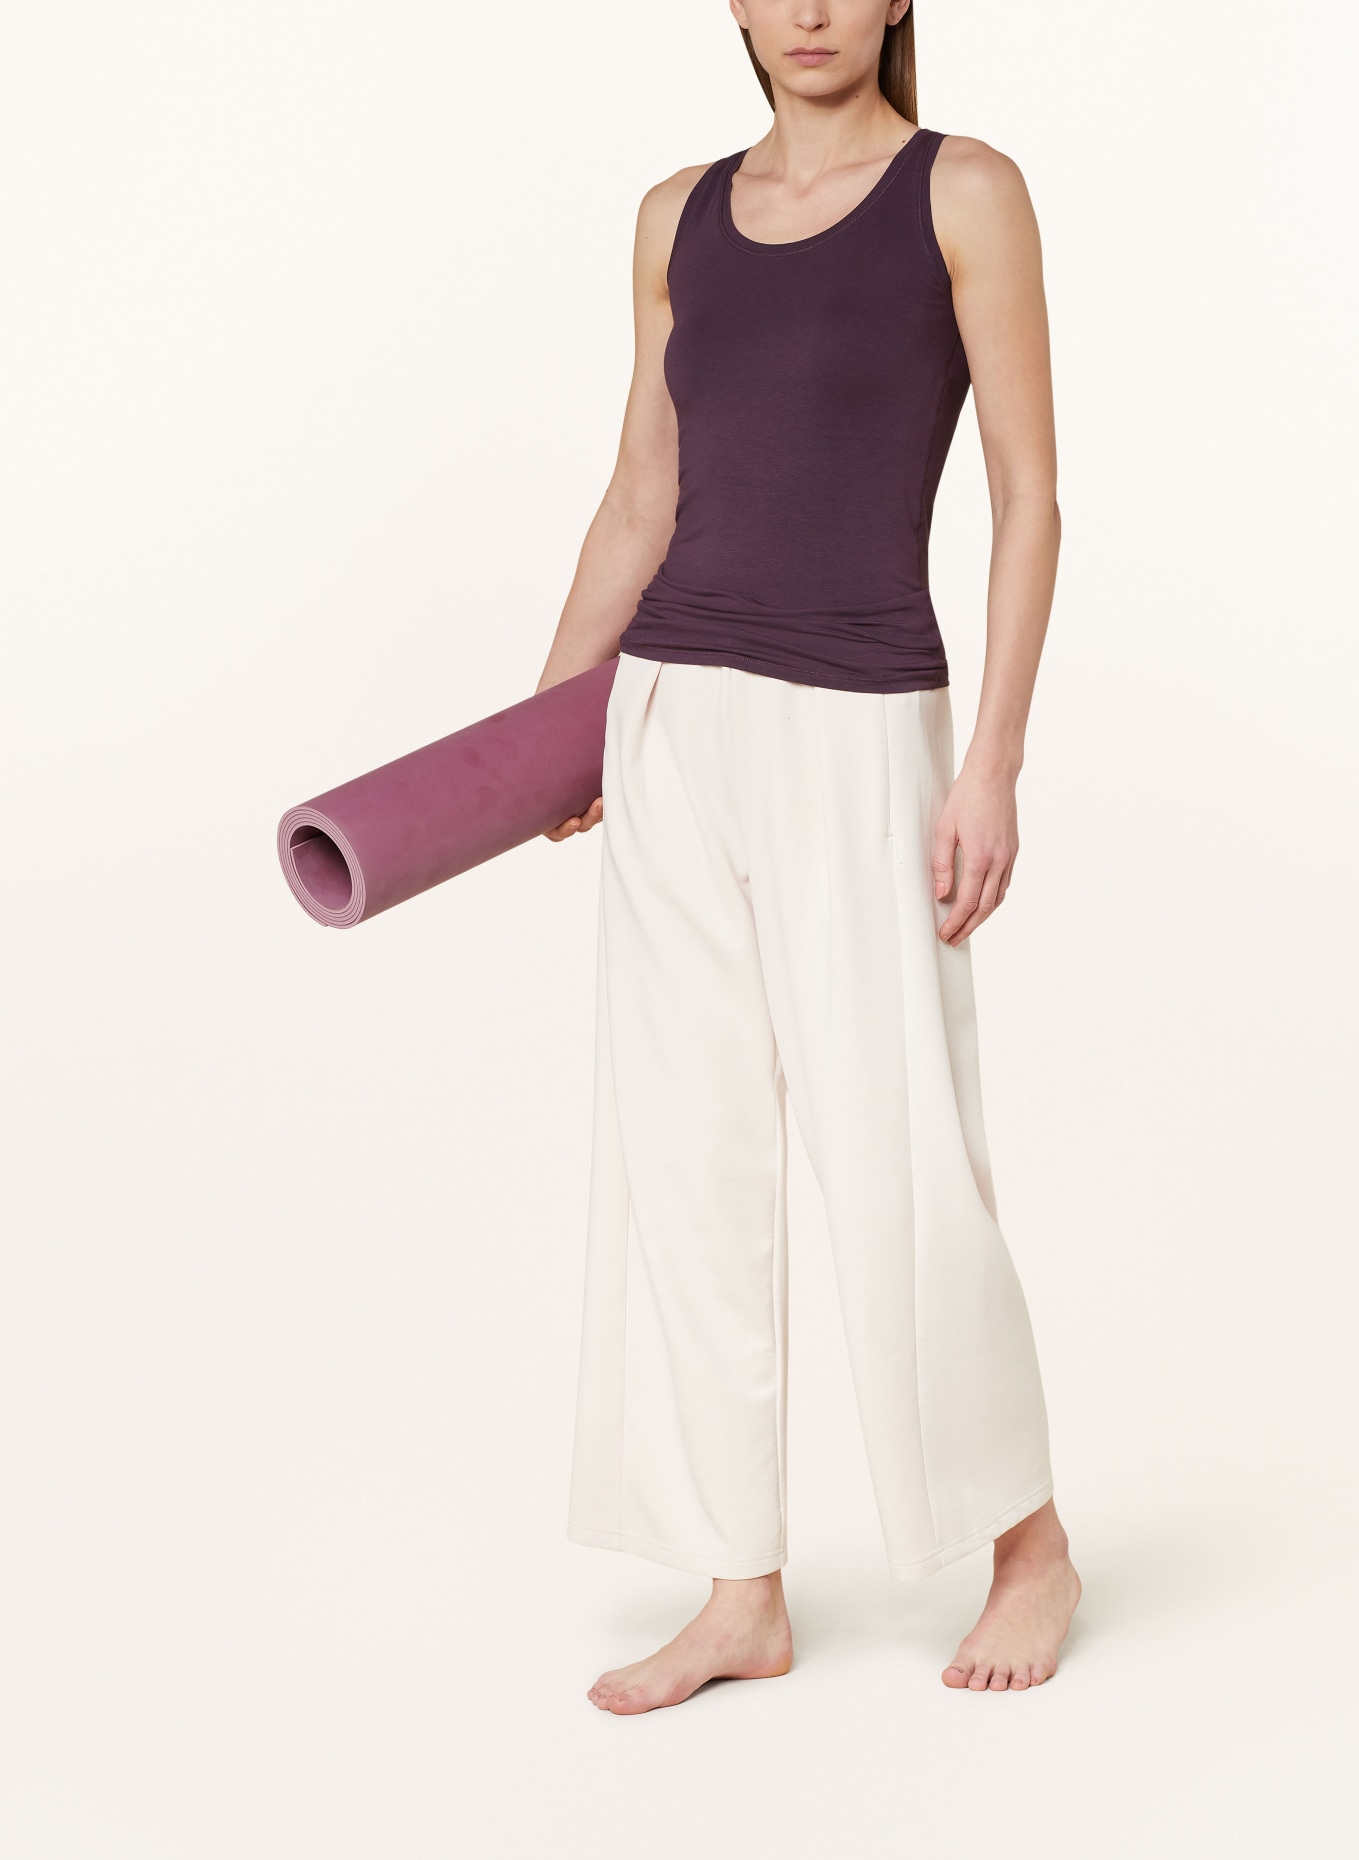 MANDALA Yoga-Top LUXE, Farbe: DUNKELLILA (Bild 2)